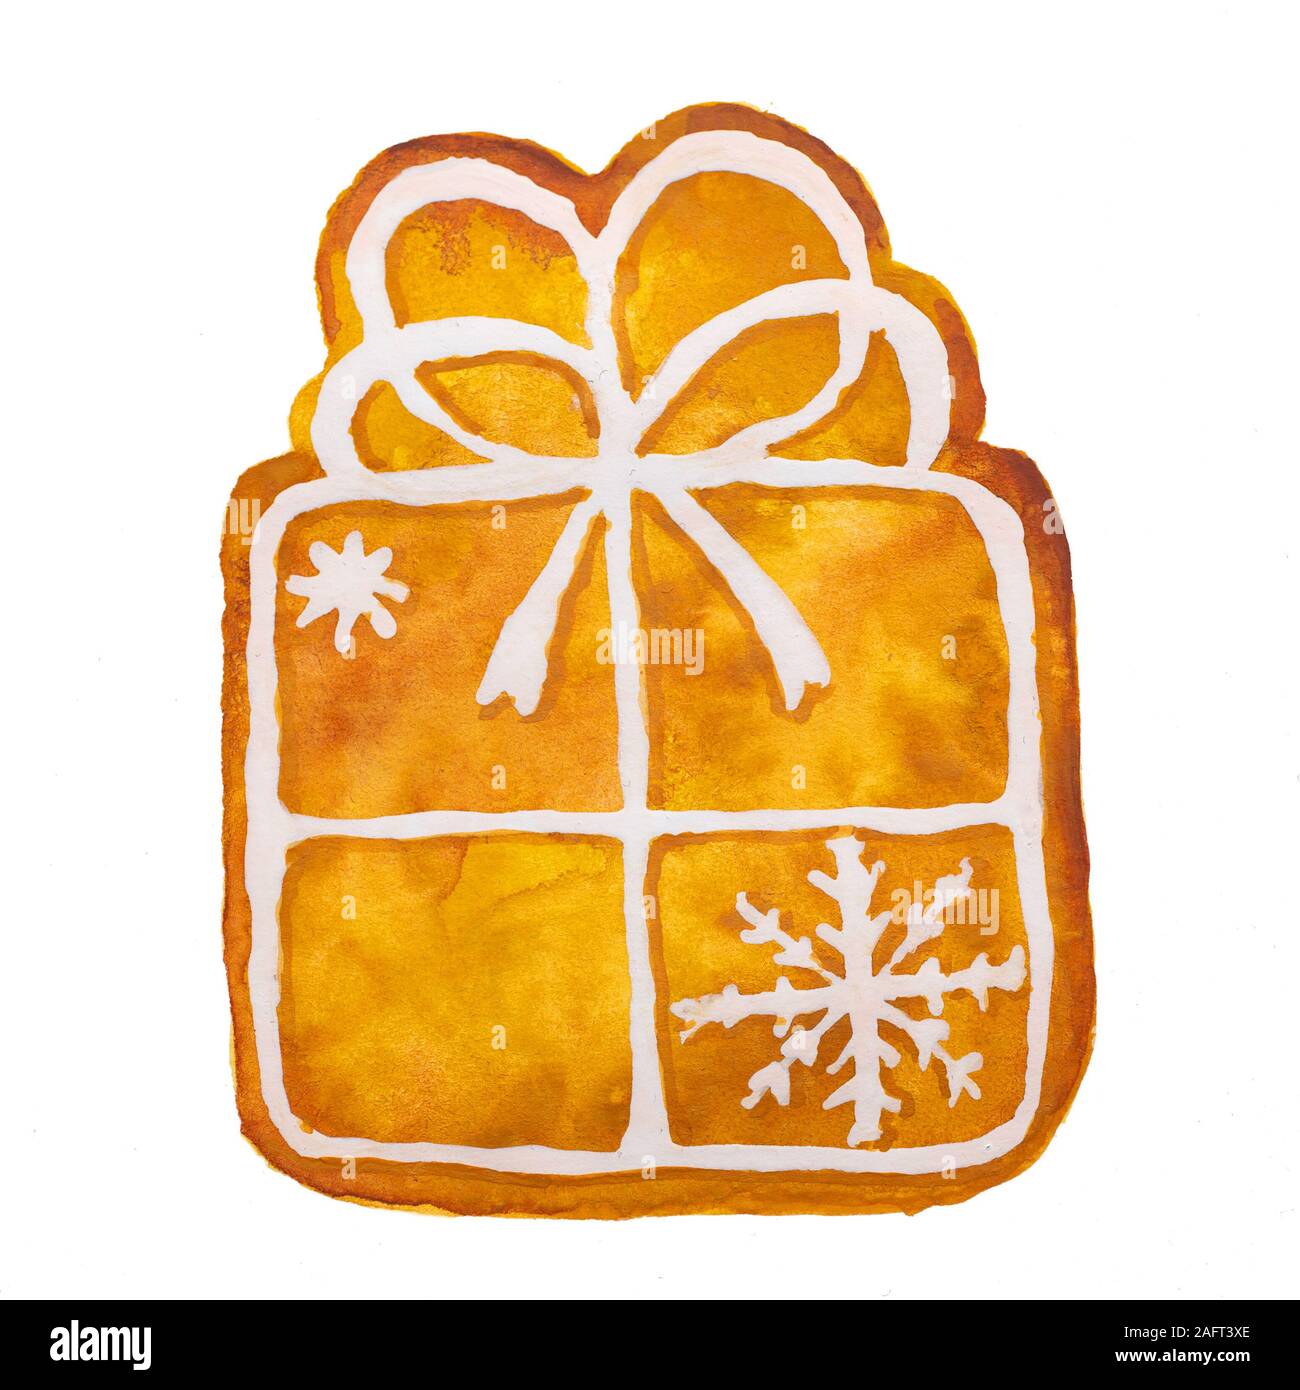 Dibujo de acuarela dibujado a mano de renos de pan de jengibre de Navidad sobre fondo blanco, aislado Foto de stock